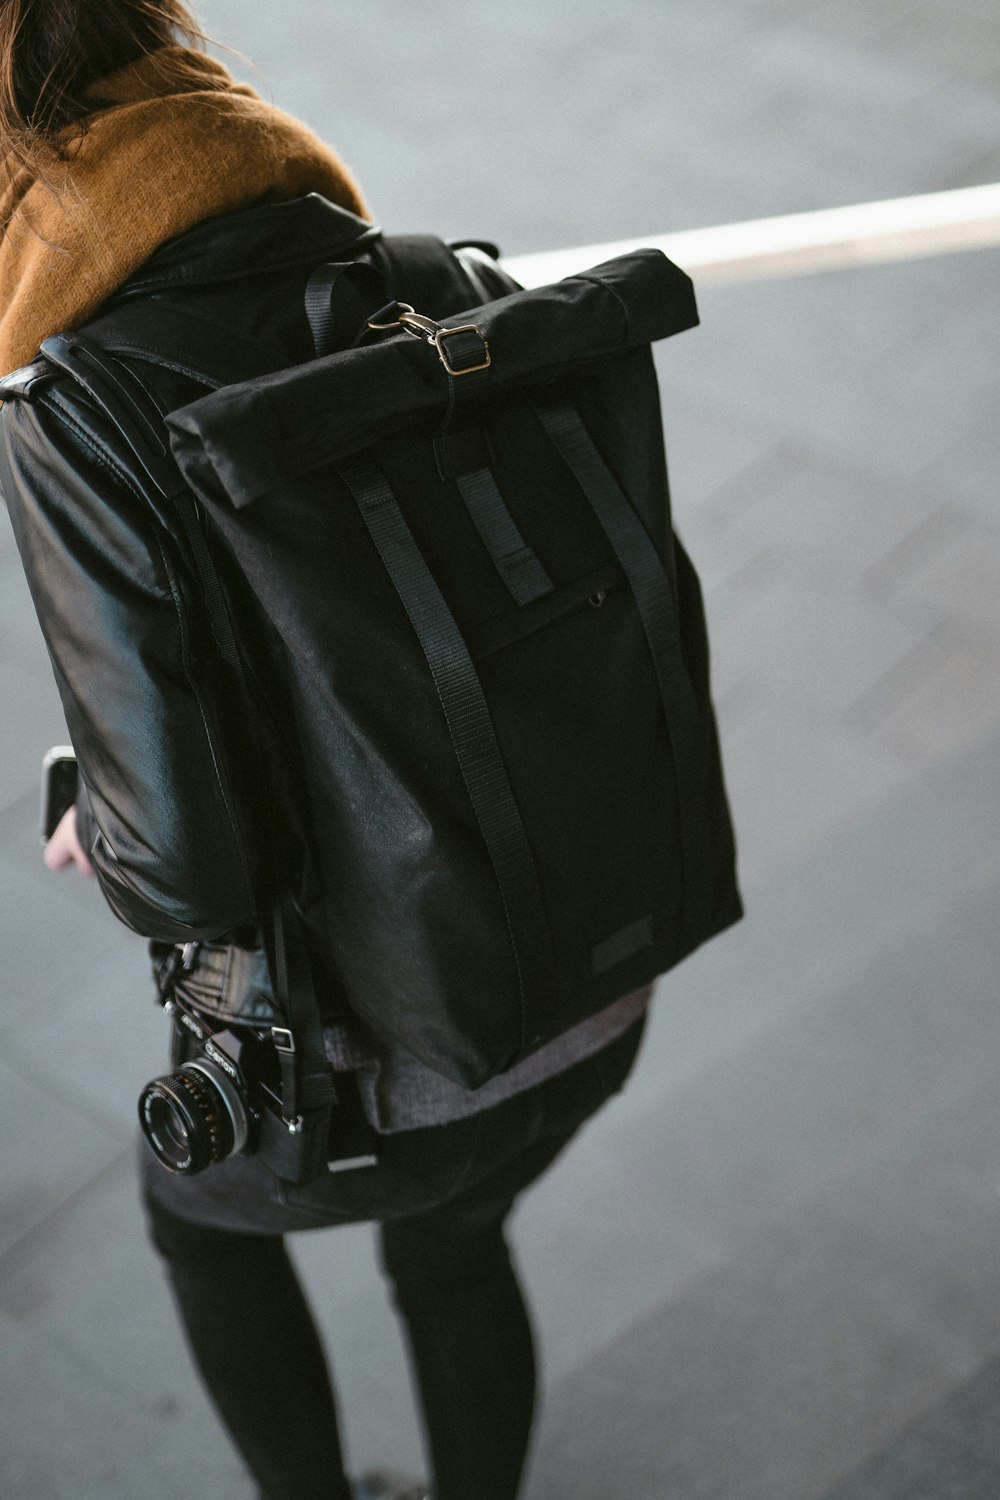 black backpack and DSLR camera